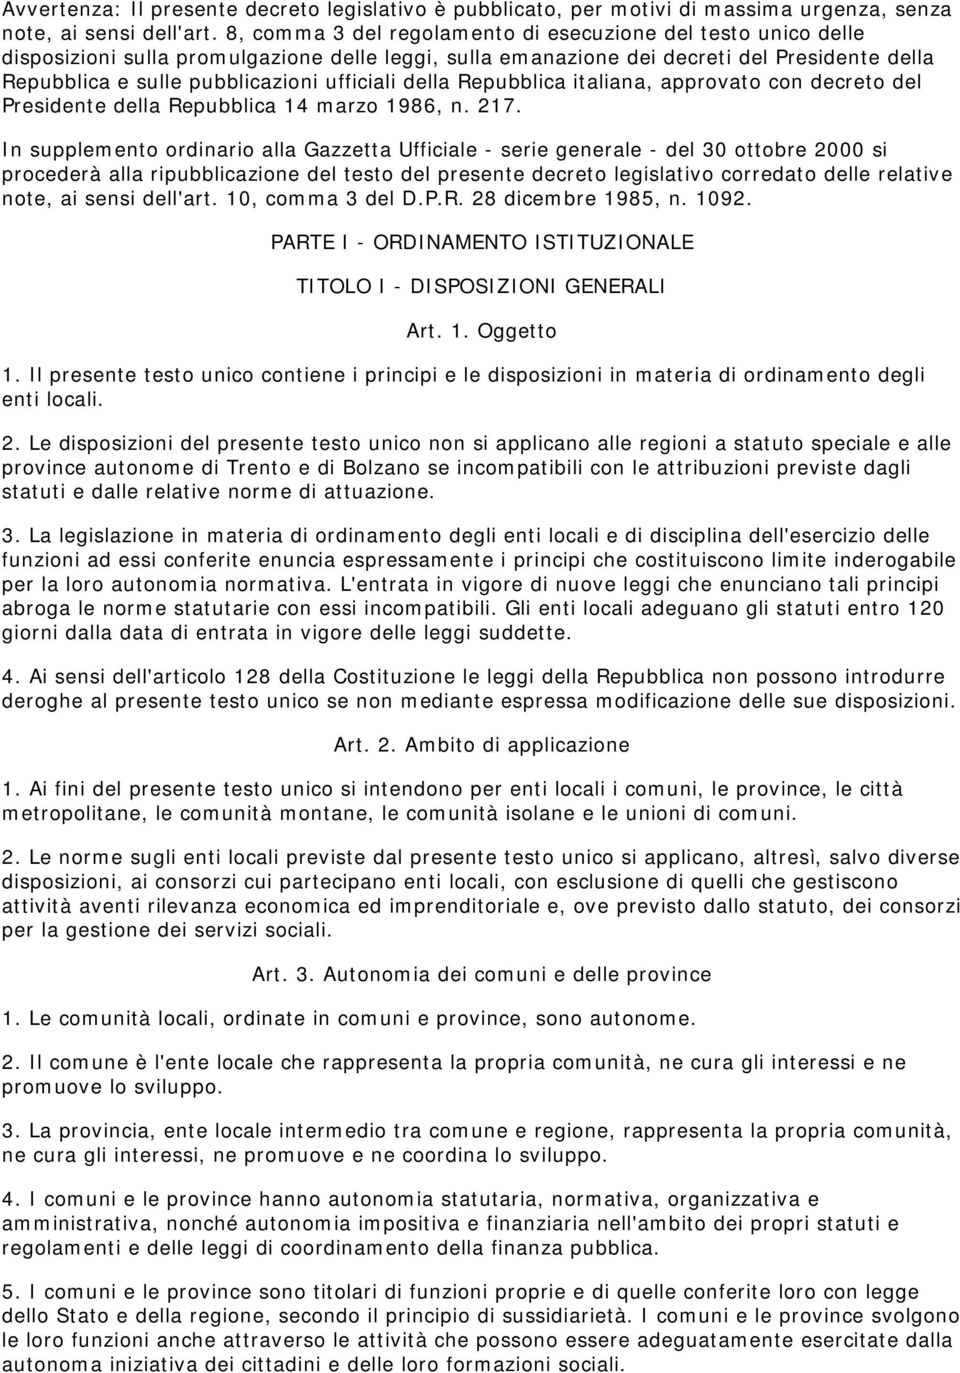 ufficiali della Repubblica italiana, approvato con decreto del Presidente della Repubblica 14 marzo 1986, n. 217.